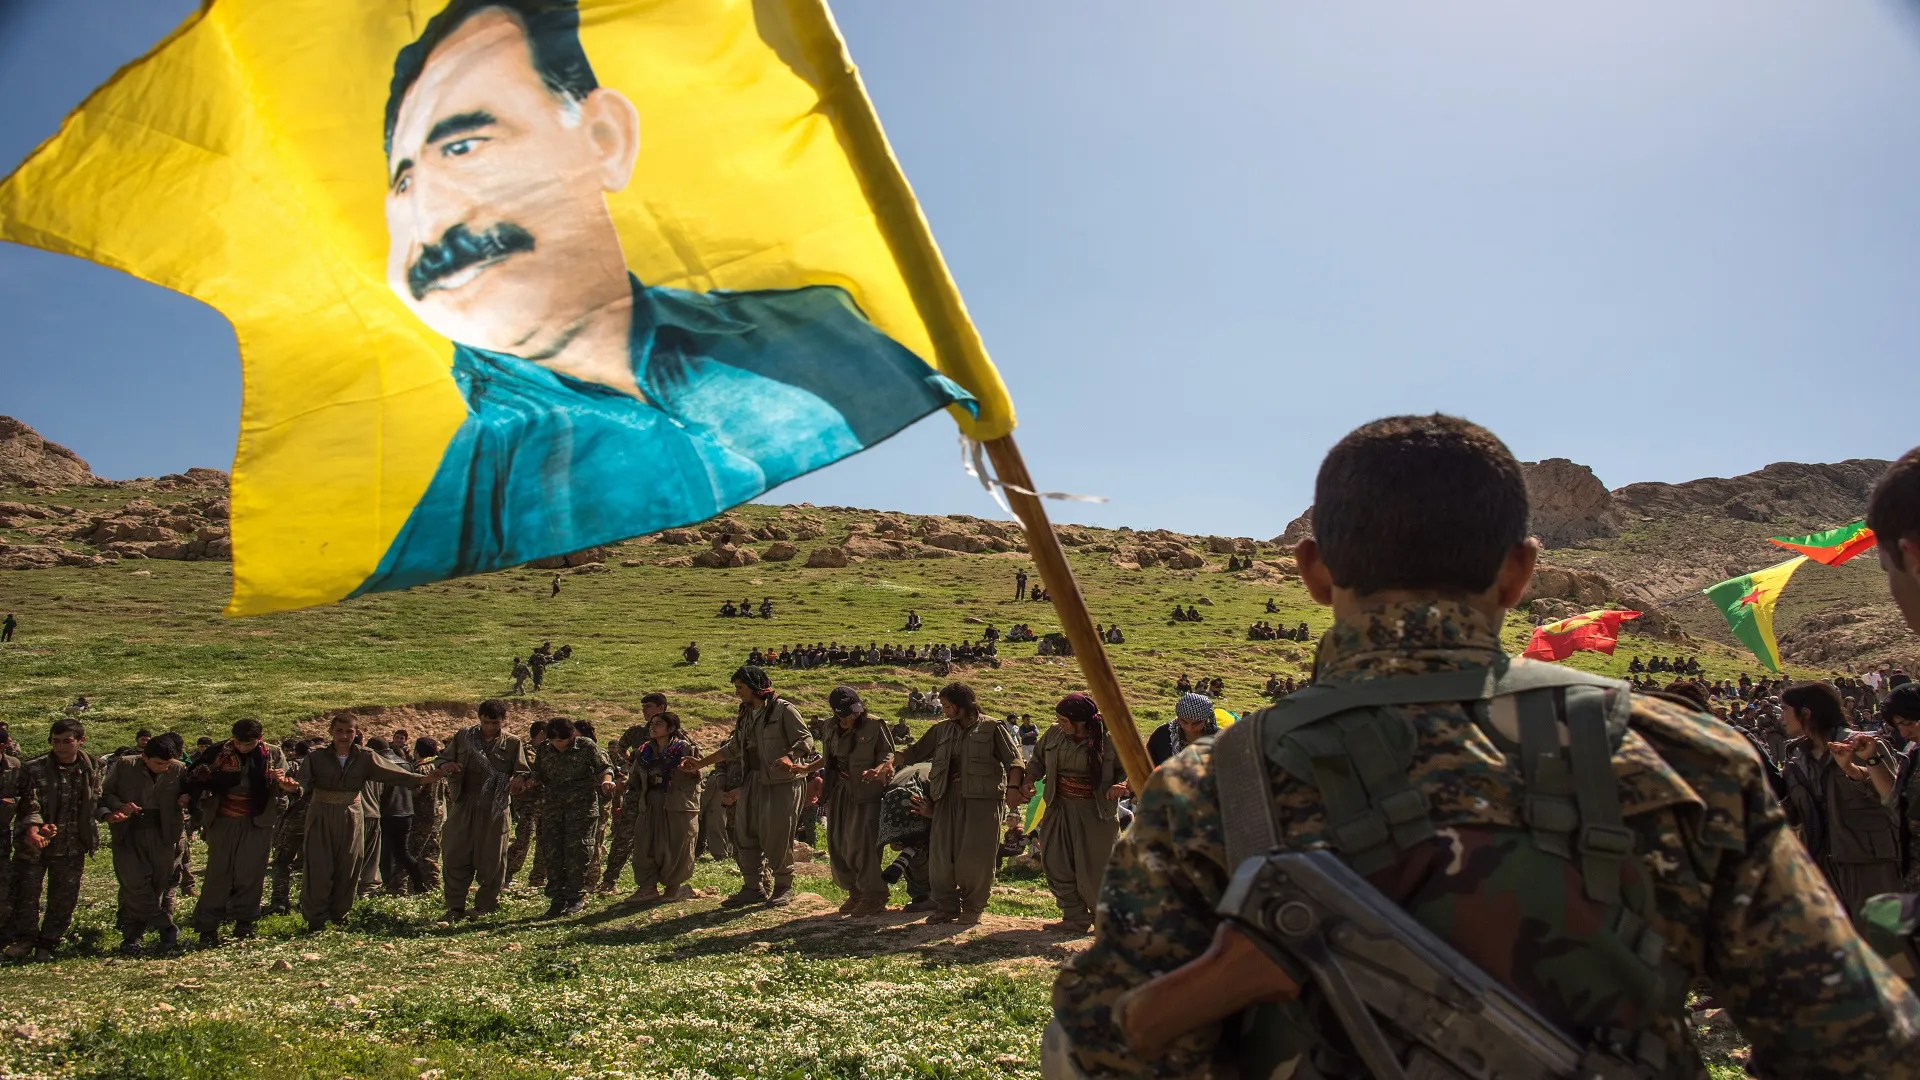 أكاديمي كردي: سكان شرقي سوريا يدفعون ثمن صراع "العمال الكردستاني وتركيا"